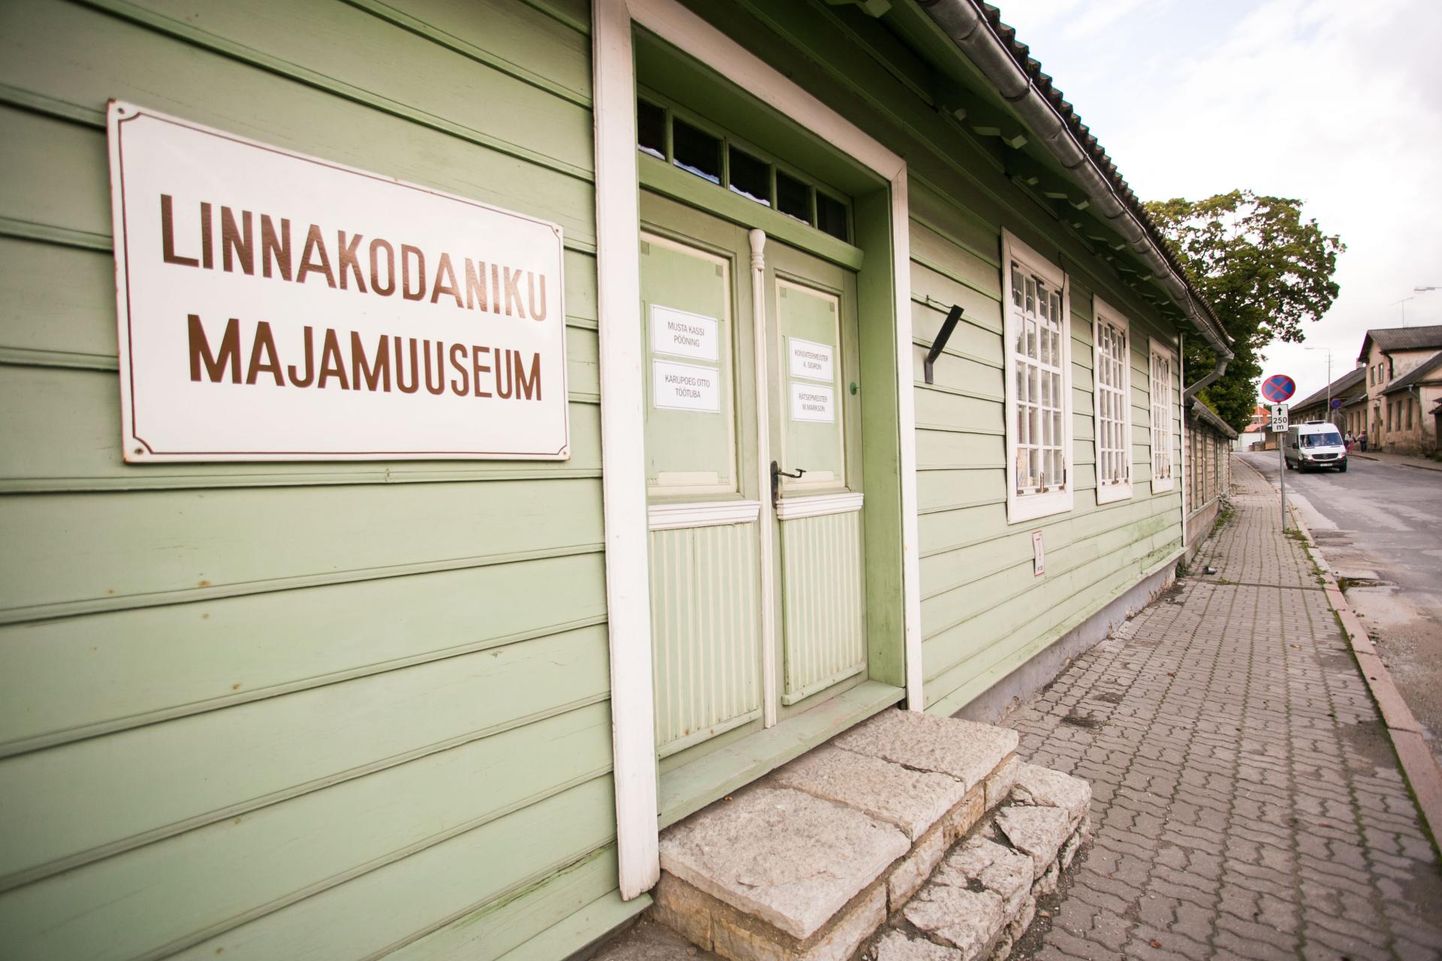 Linnakodaniku majamuuseumis on avatud fotonäitus kreisilinlastest.